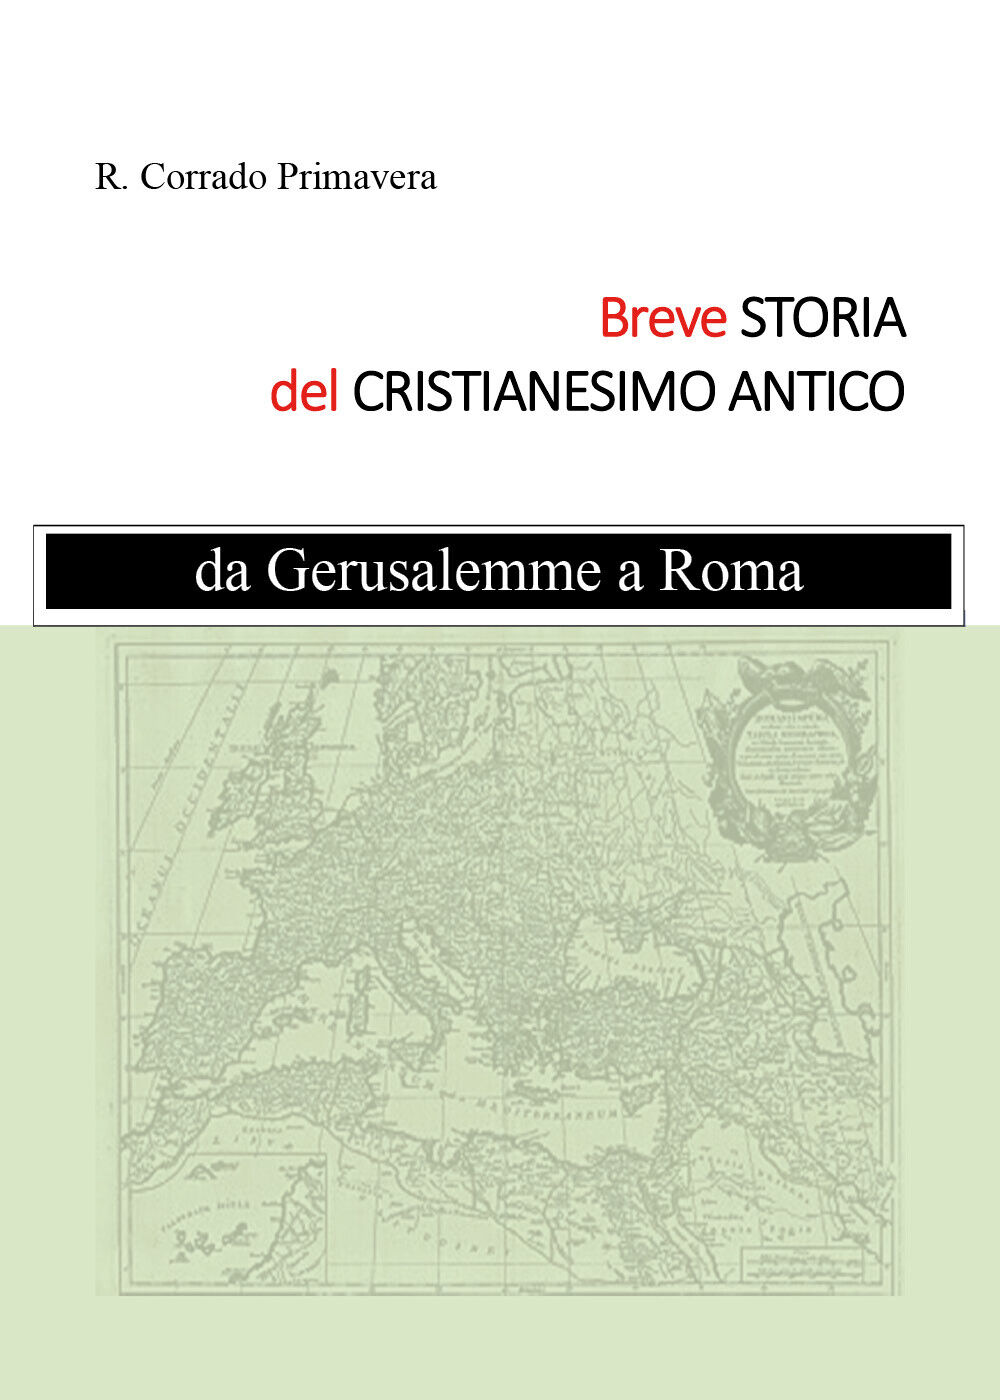 Breve Storia del Cristianesimo Antico, R. Corrado Primavera,  2019,  Youcanprint libro usato